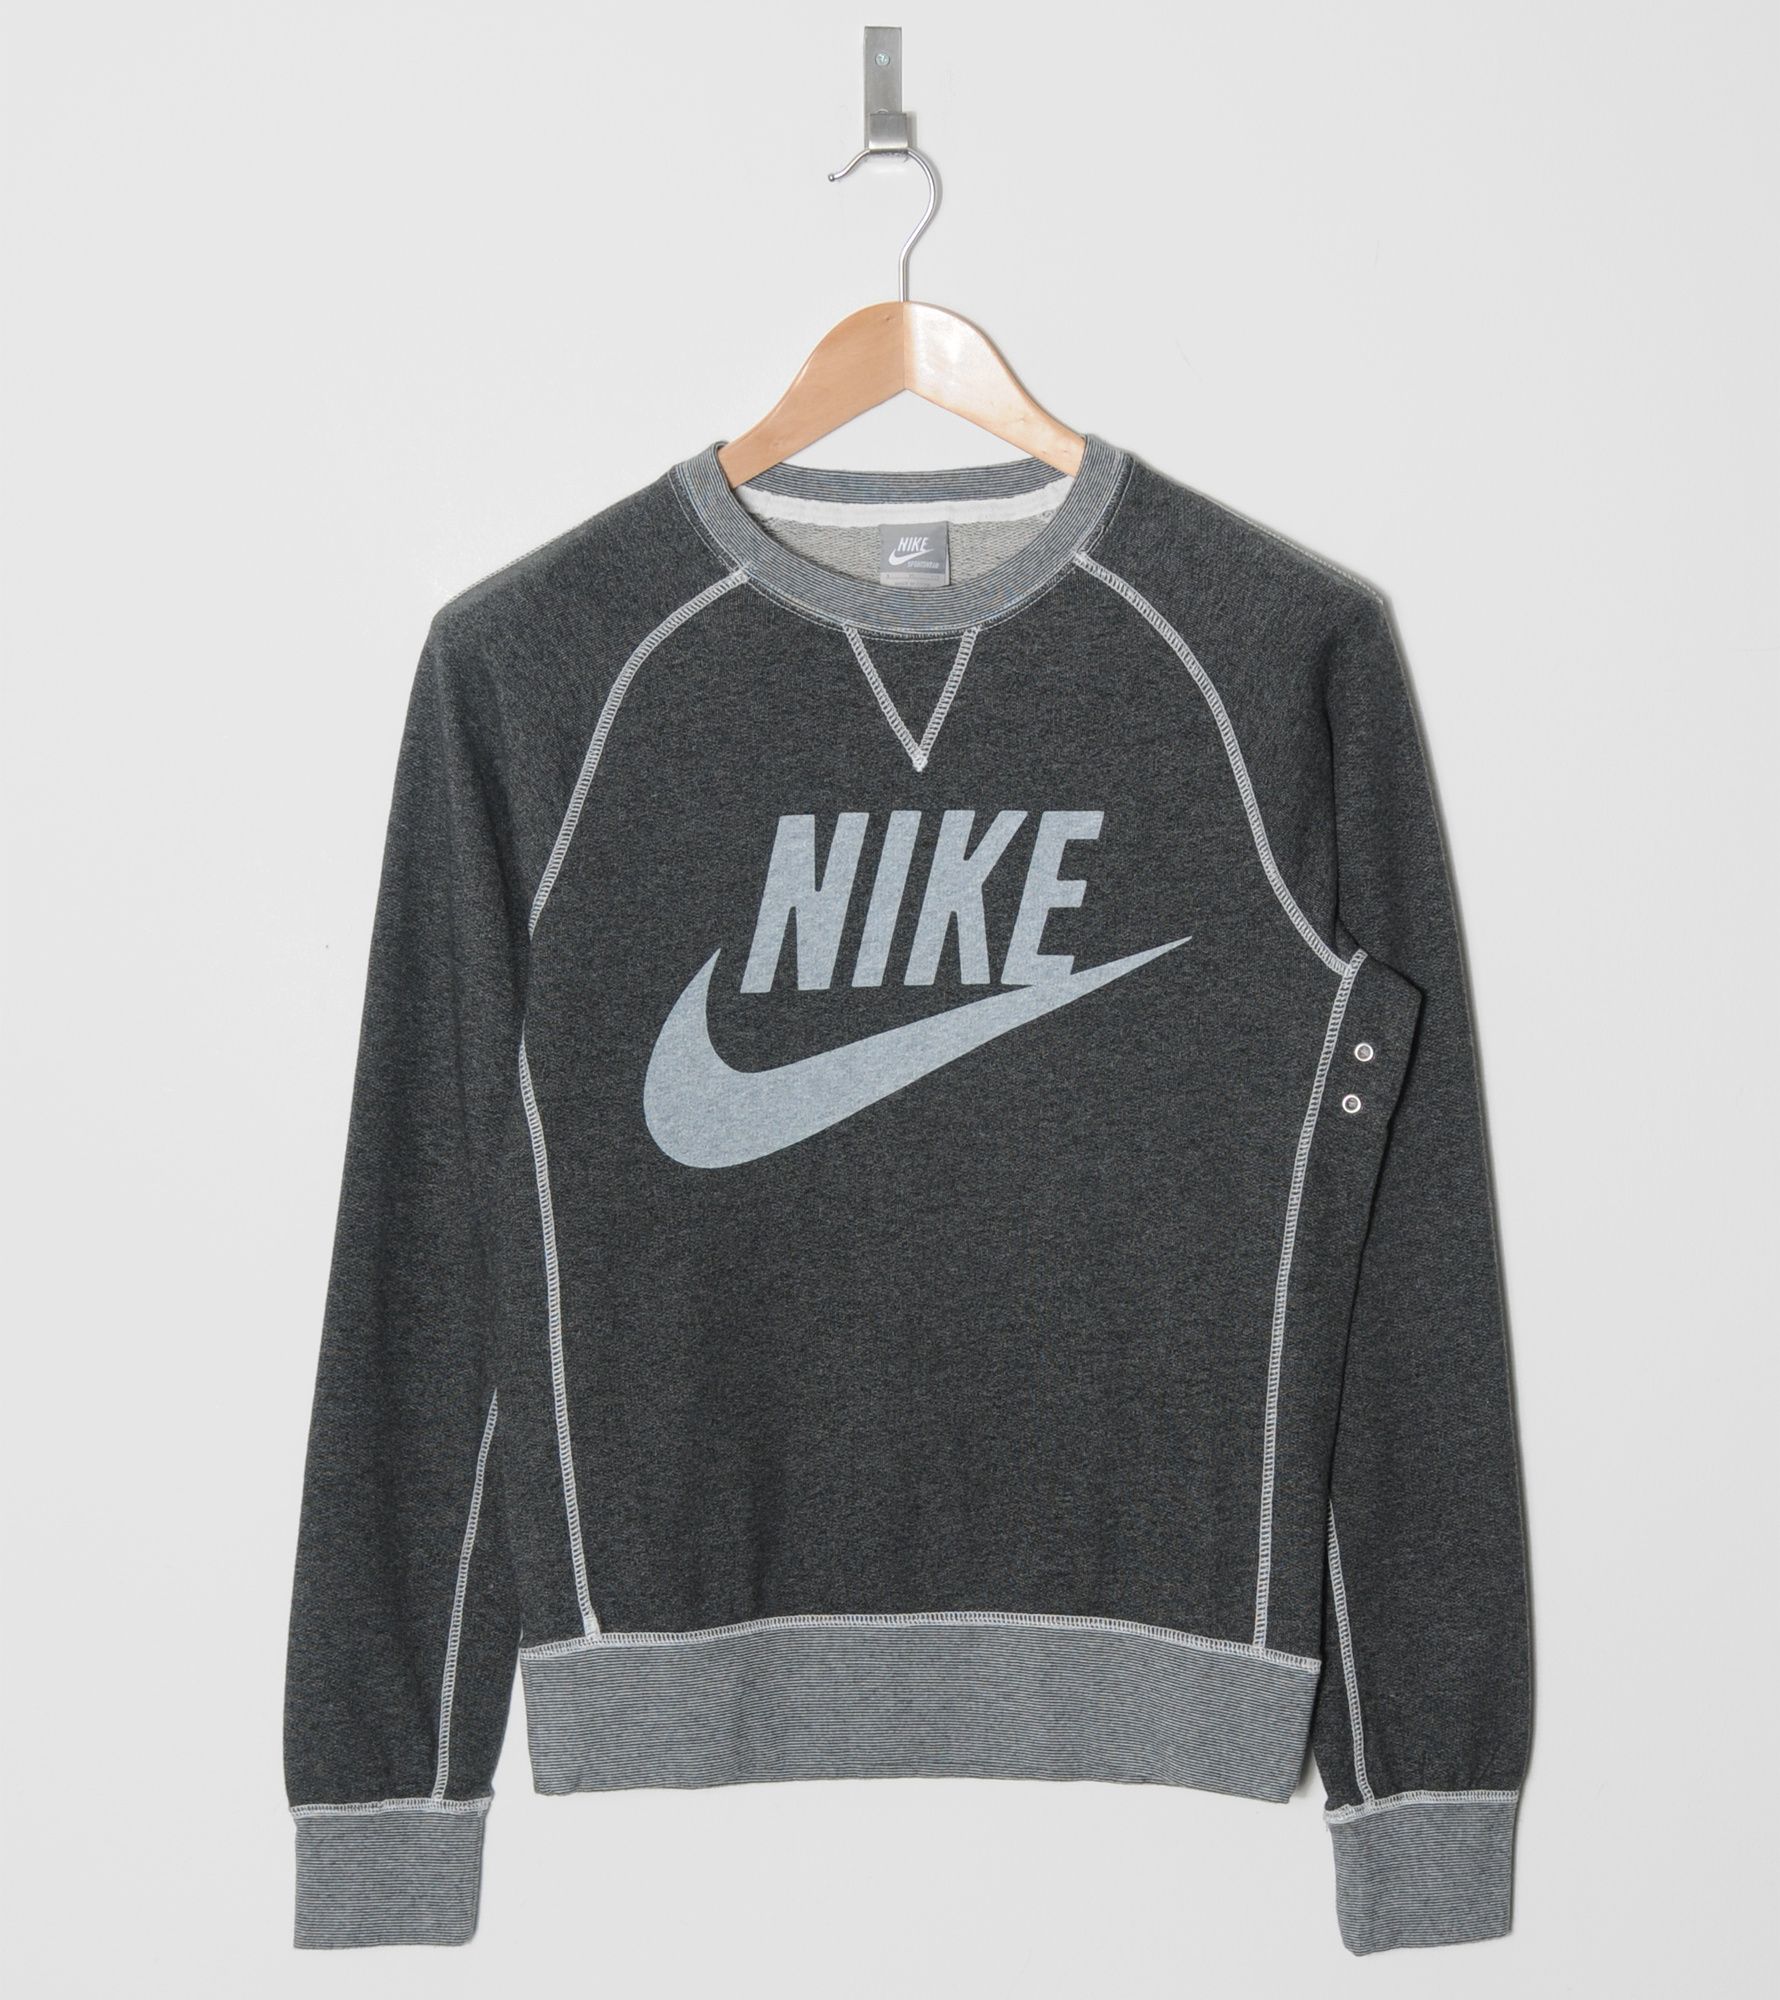 Nike Vintage Crew Sweatshirt | Size?